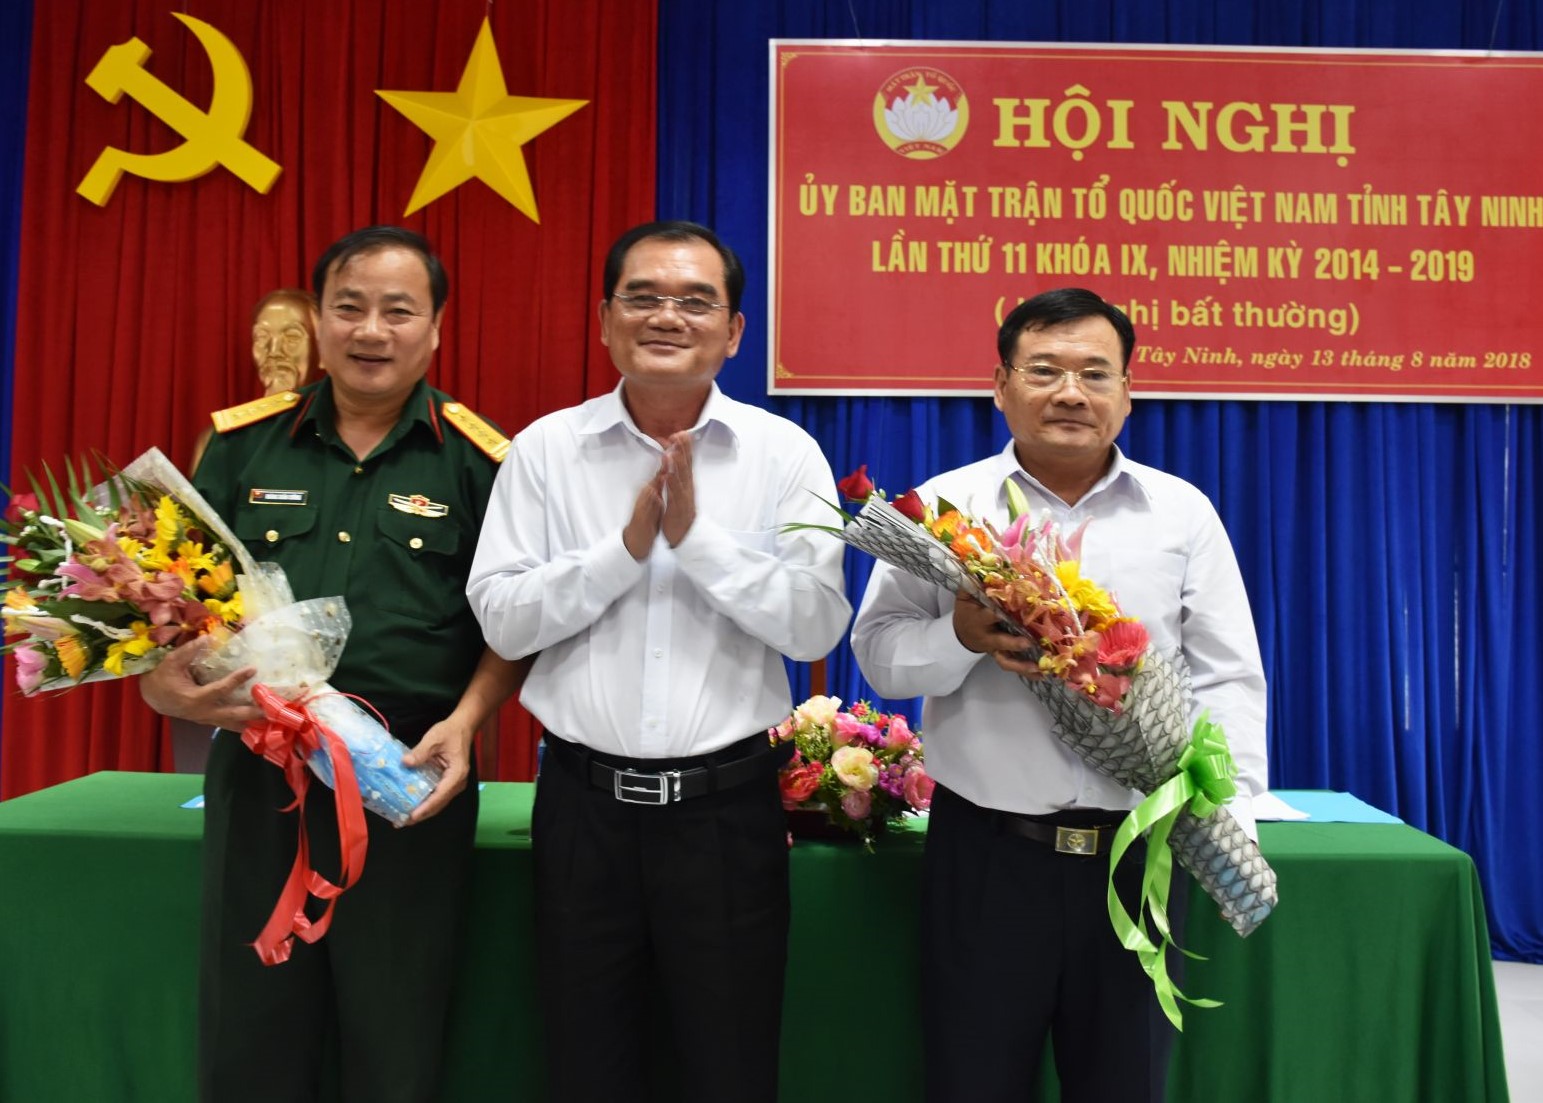 Điểm báo in Tây Ninh ngày 17.8.2018